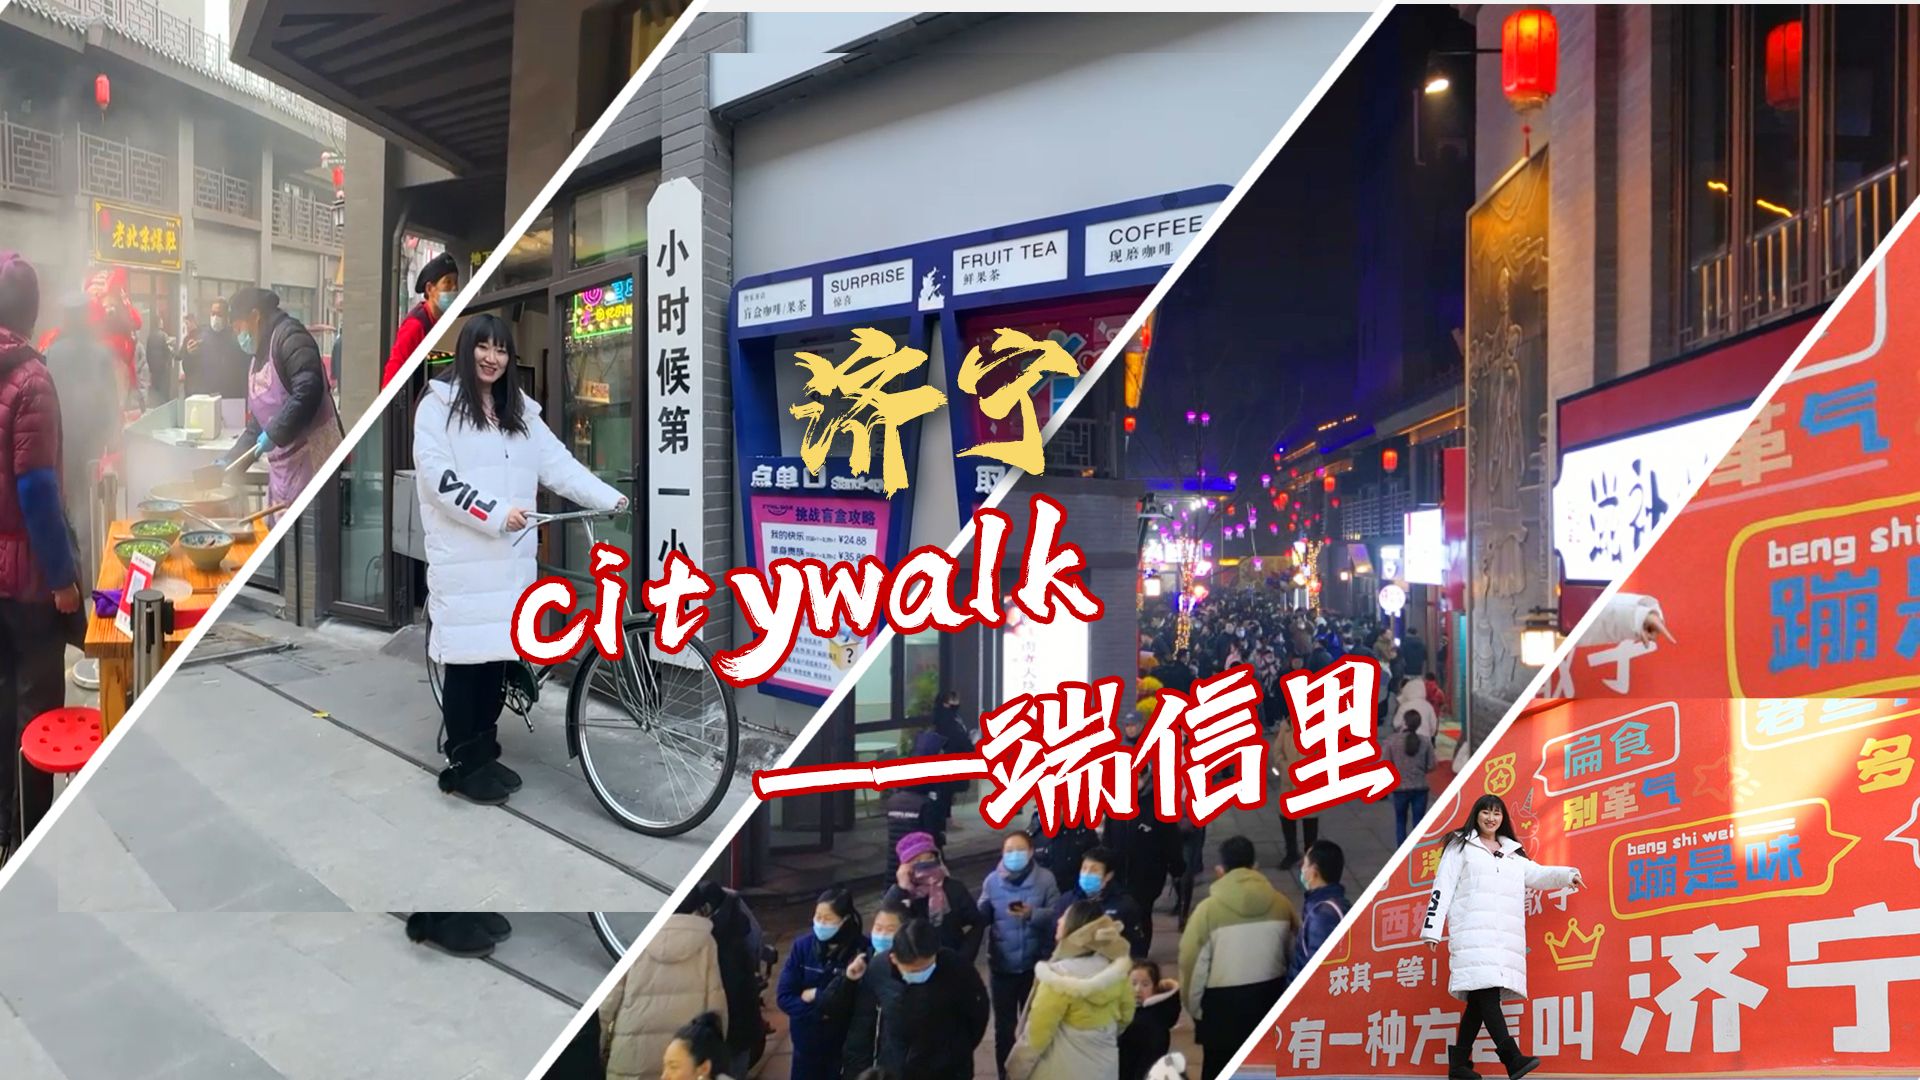 更济宁 | 济宁citywalk——端信里